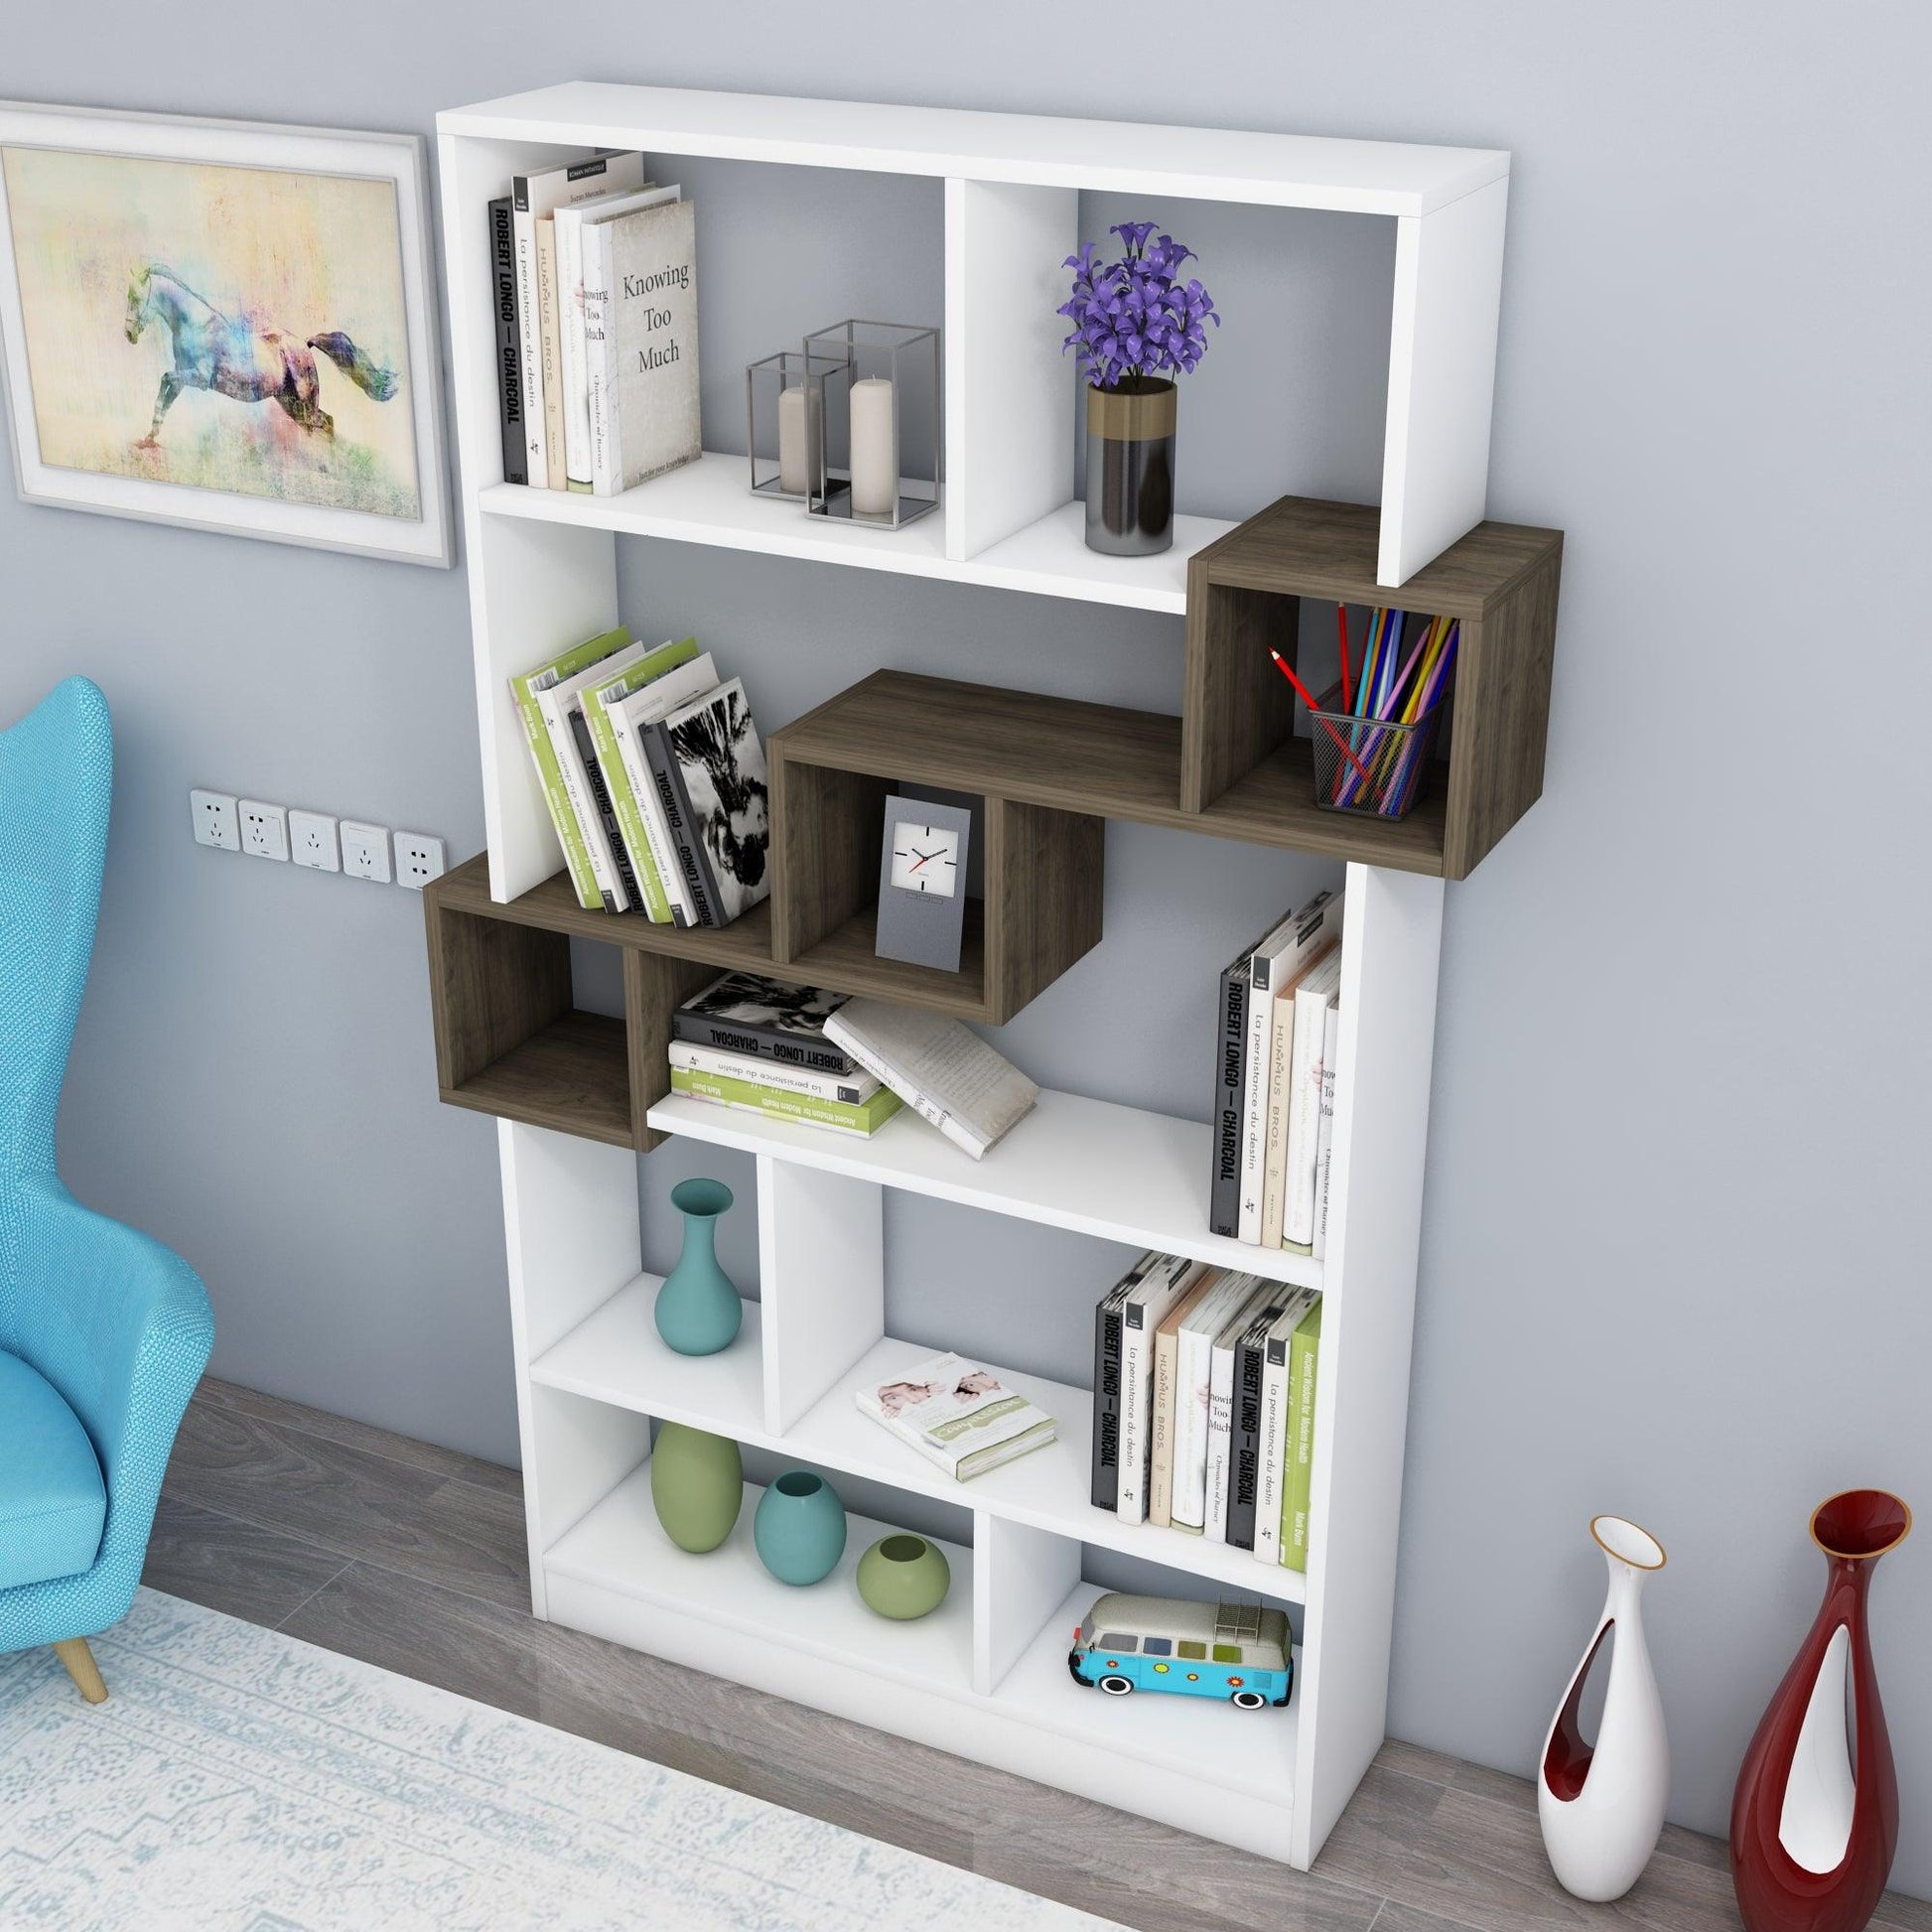  shelving unit, shelf, bookshelf, bookcase, bookcase styling, bookcase decor, bookcase design